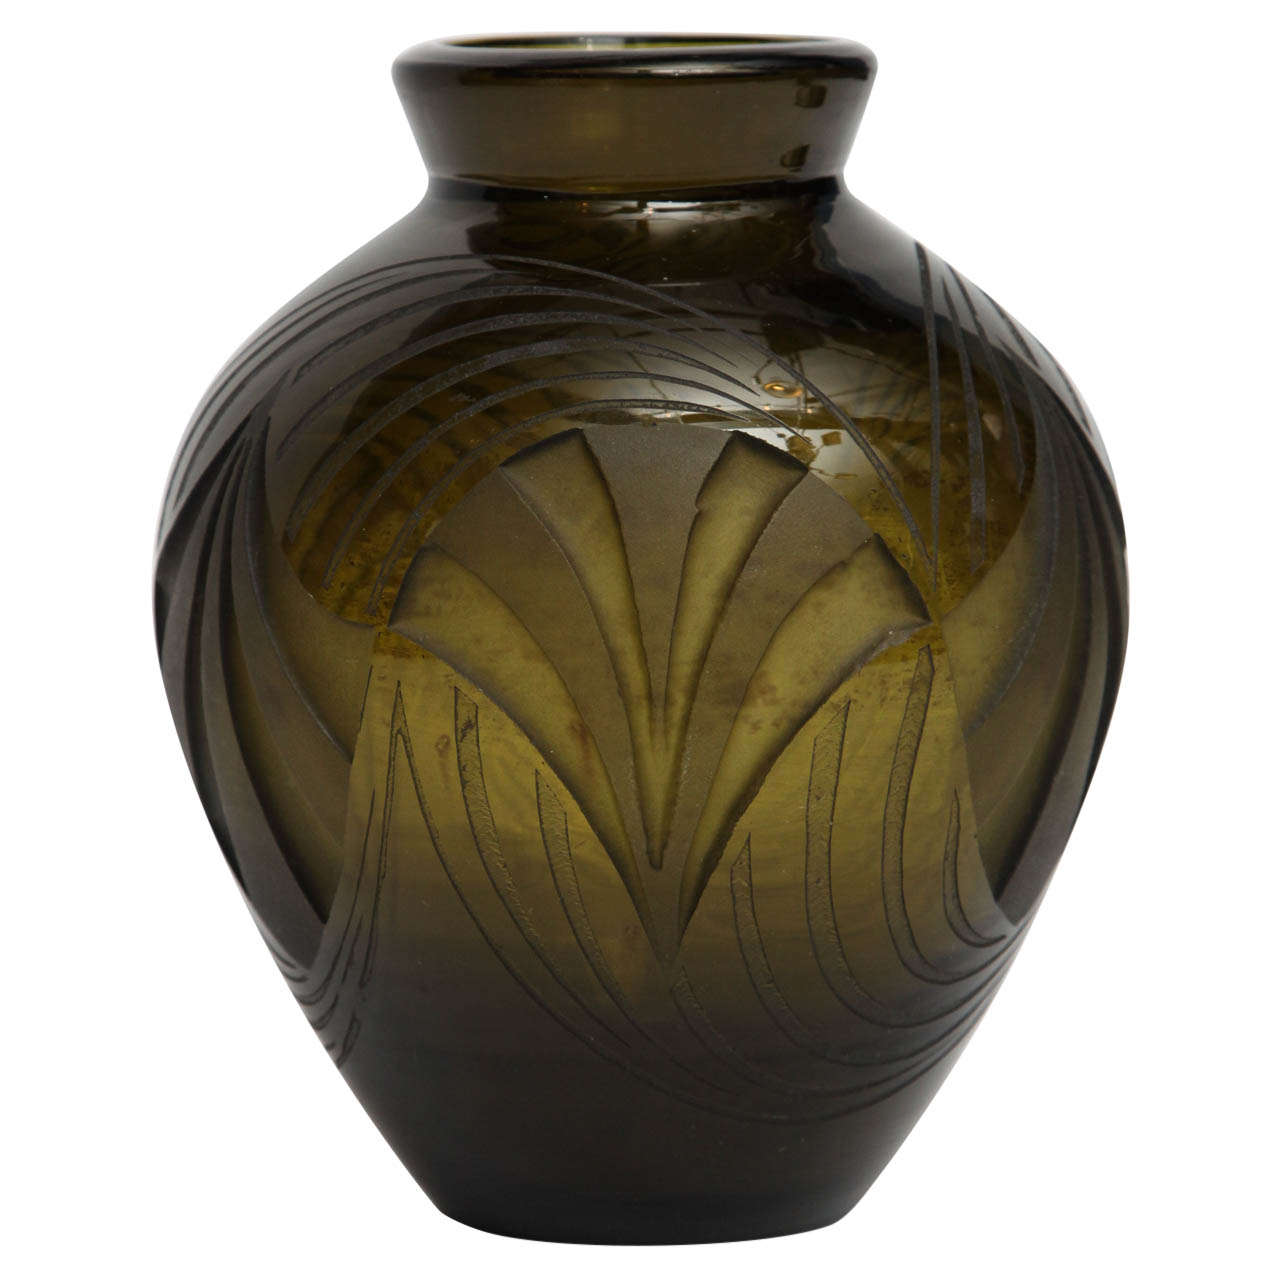 Legras, Acid-etched glass vase, France, c. 1920